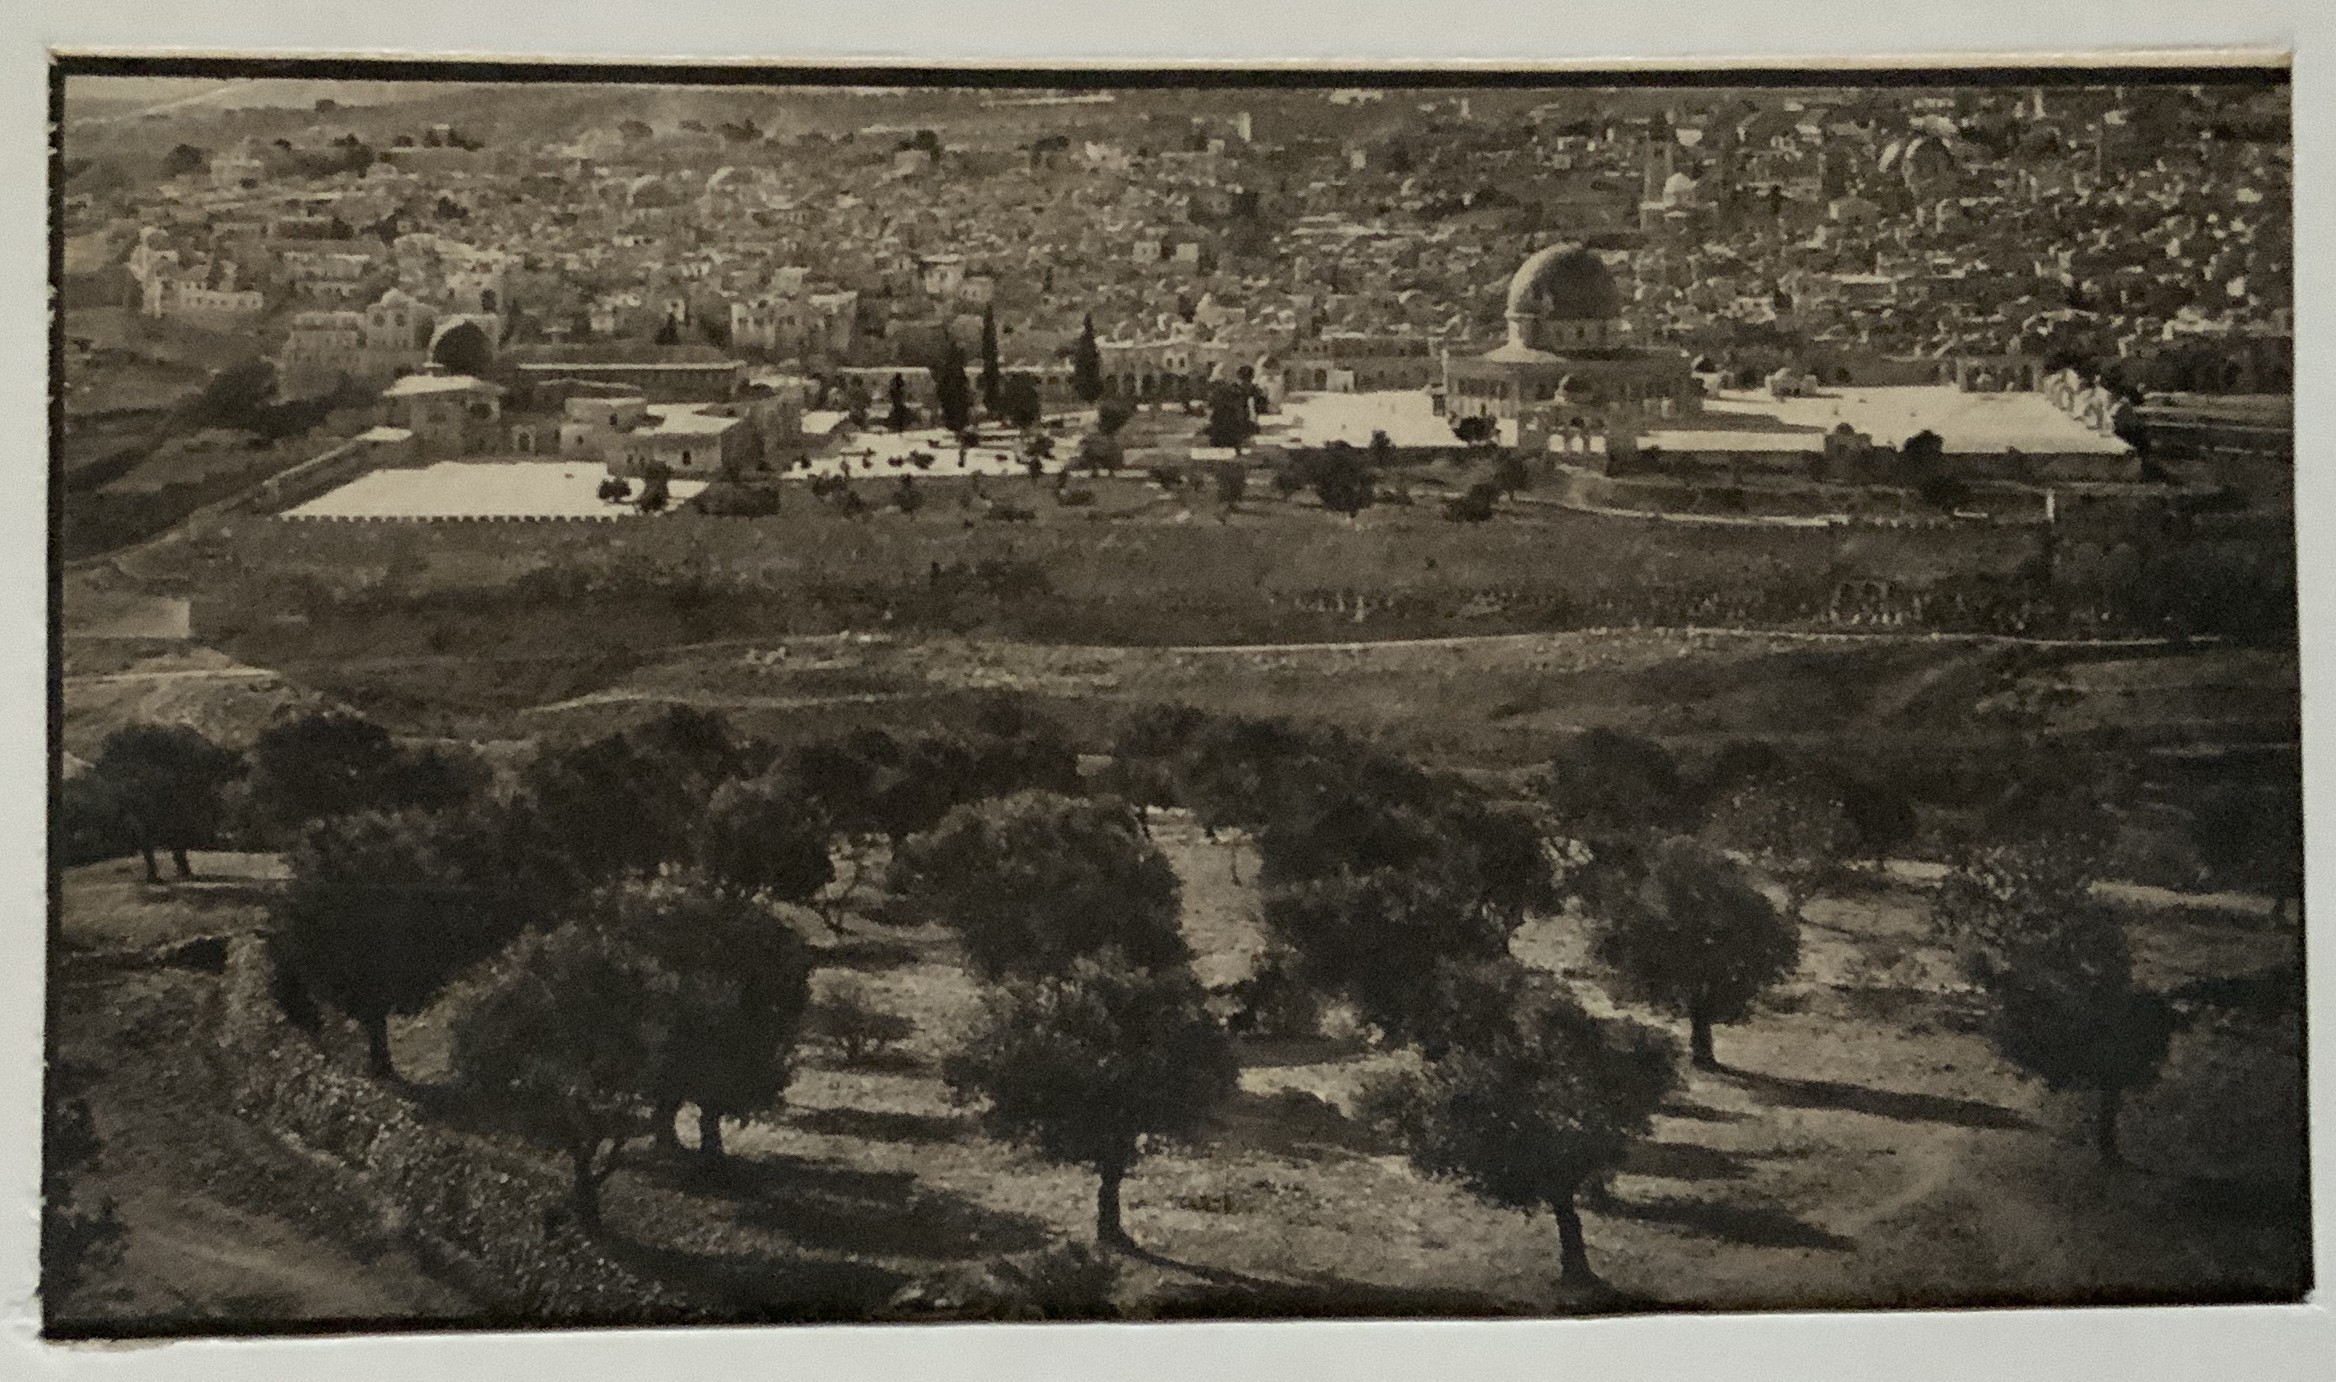 JERUSALEM EARLY ETCHING (c.1910) App.size: 20cm x 11.5cm (total 32cm x 23cm)